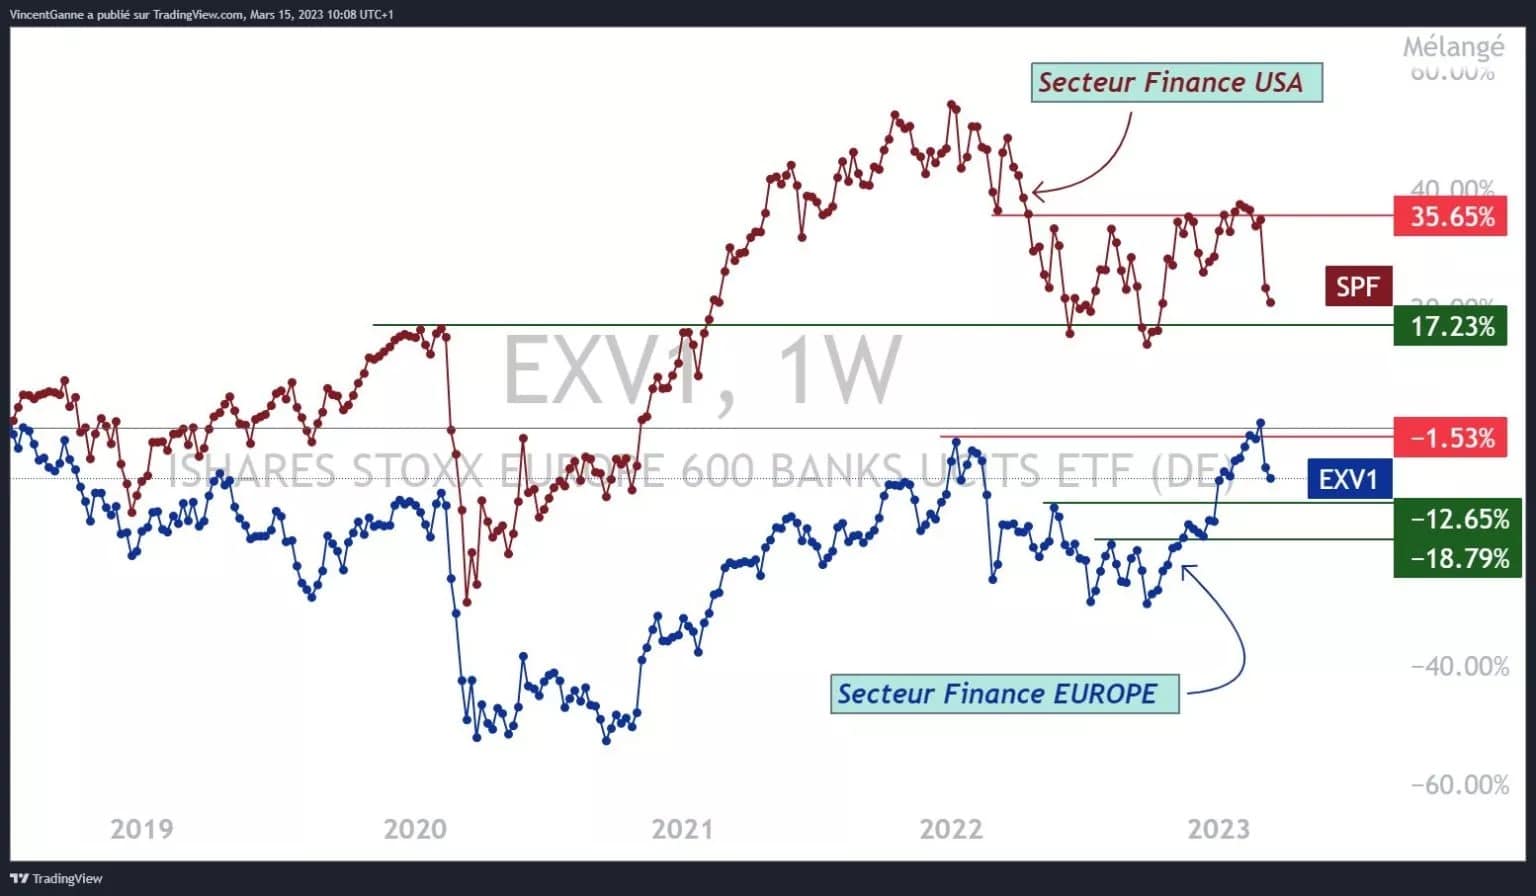 Gráfico que yuxtapone los índices del sector Banca/Finanzas de los mercados de renta variable de EE.UU. y Europa